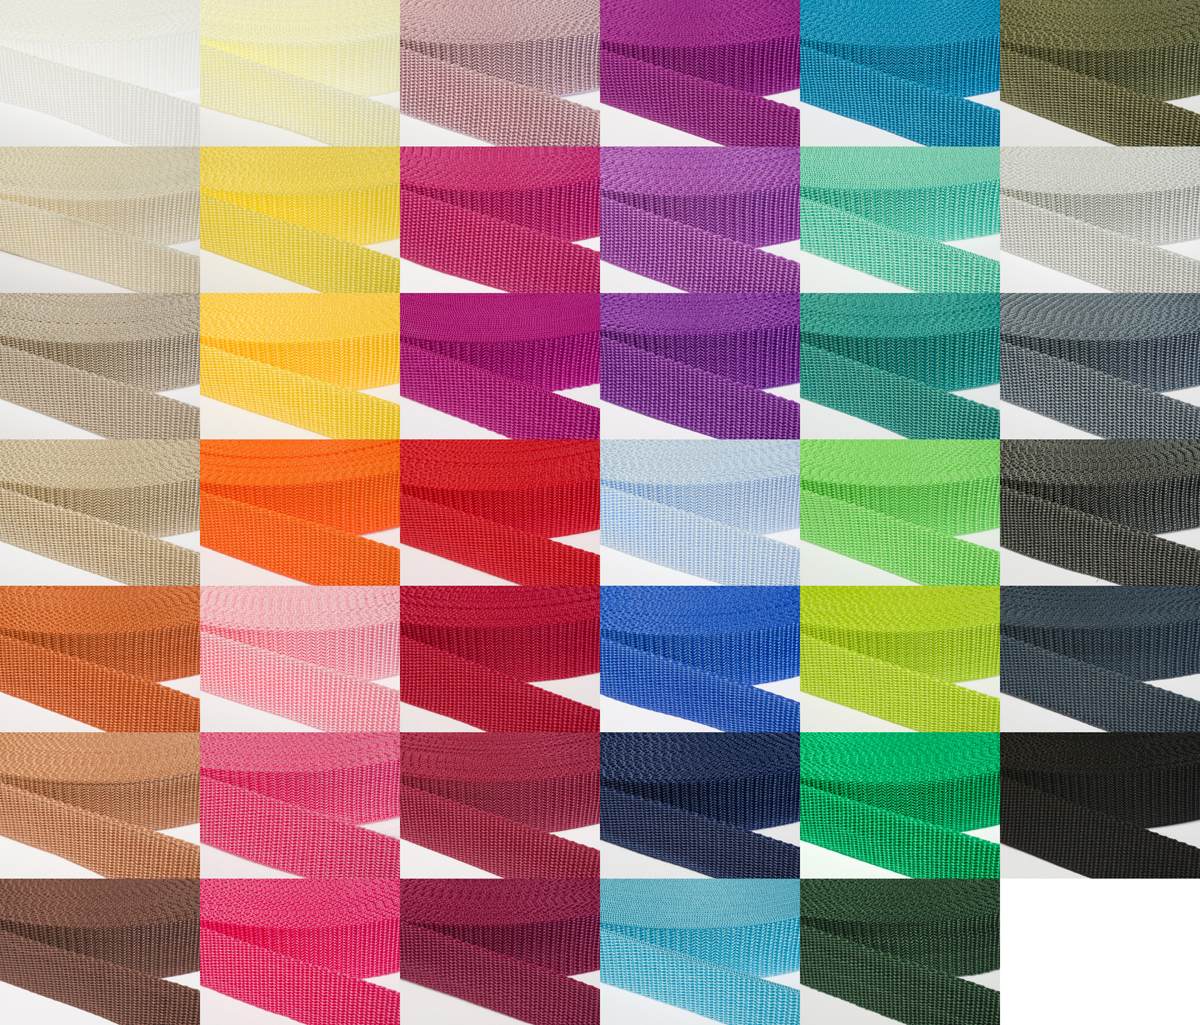 Gurtband 30mm breit aus Polypropylen in 41 Farben 40 - dunkelgrau/blau 12 Meter